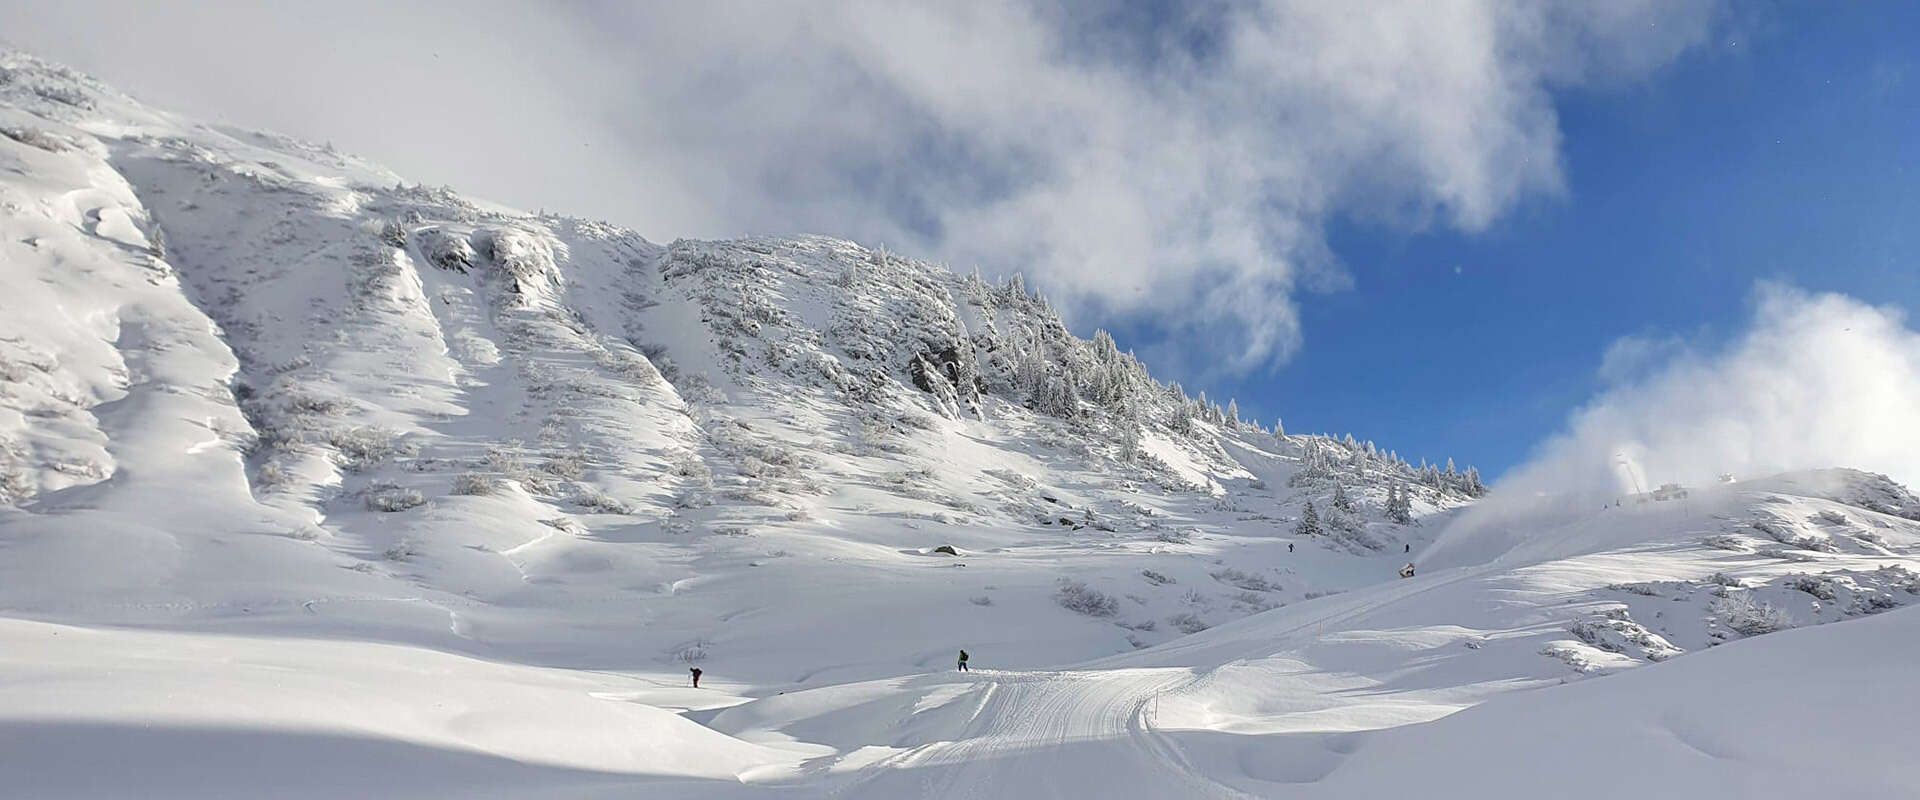 Skigebiet am Arlberg mit geführten Skitouren